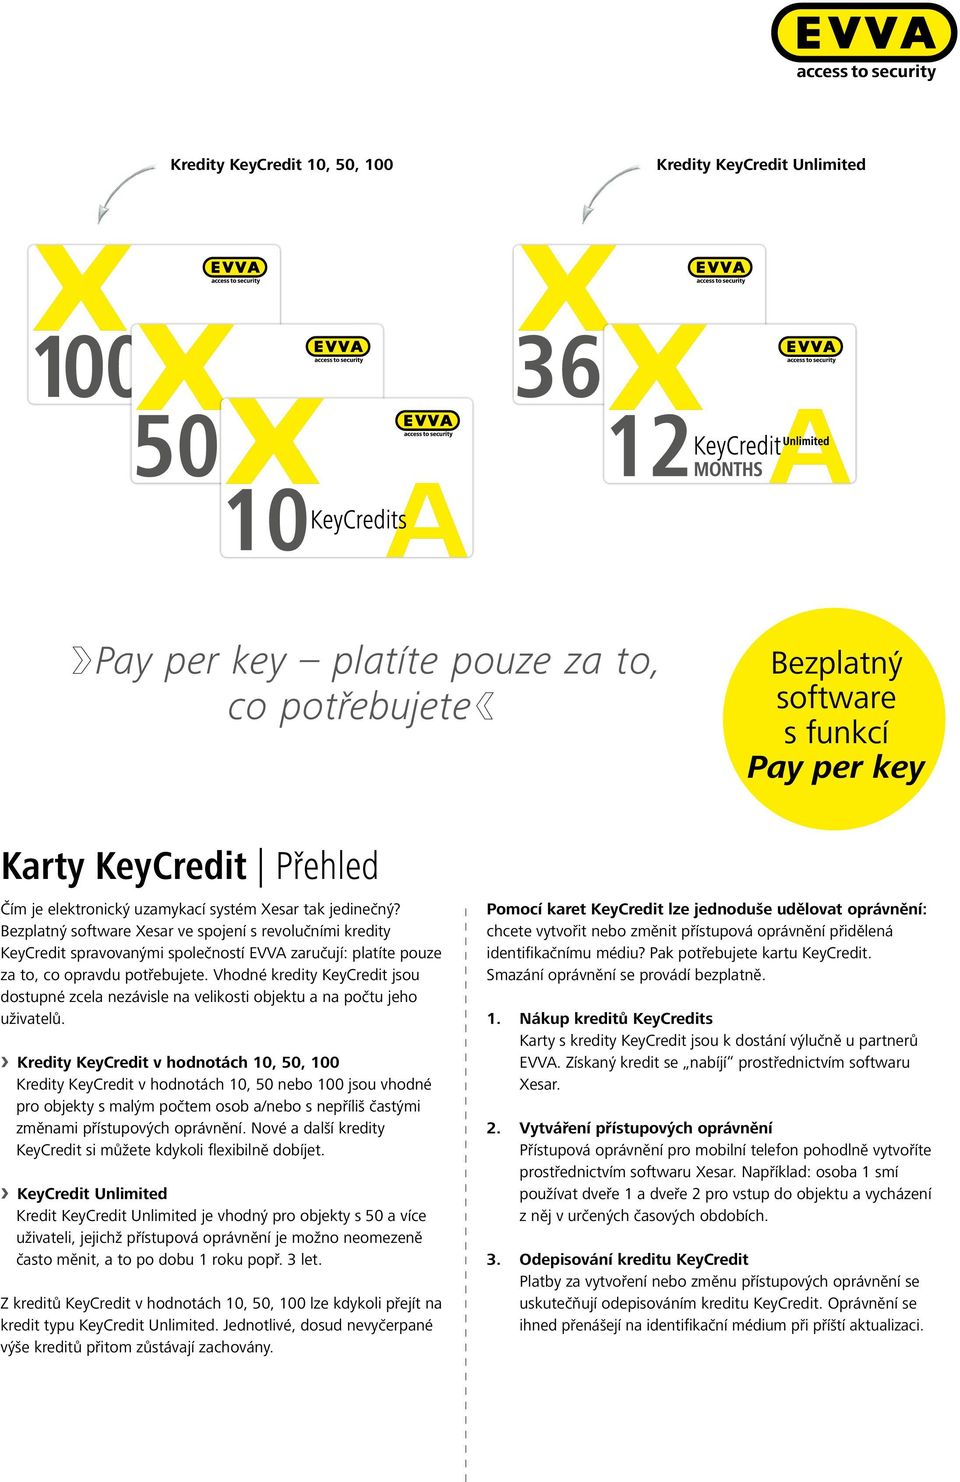 Vhodné kredity KeyCredit jsou dostupné zcela nezávisle na velikosti objektu a na počtu jeho uživatelů.